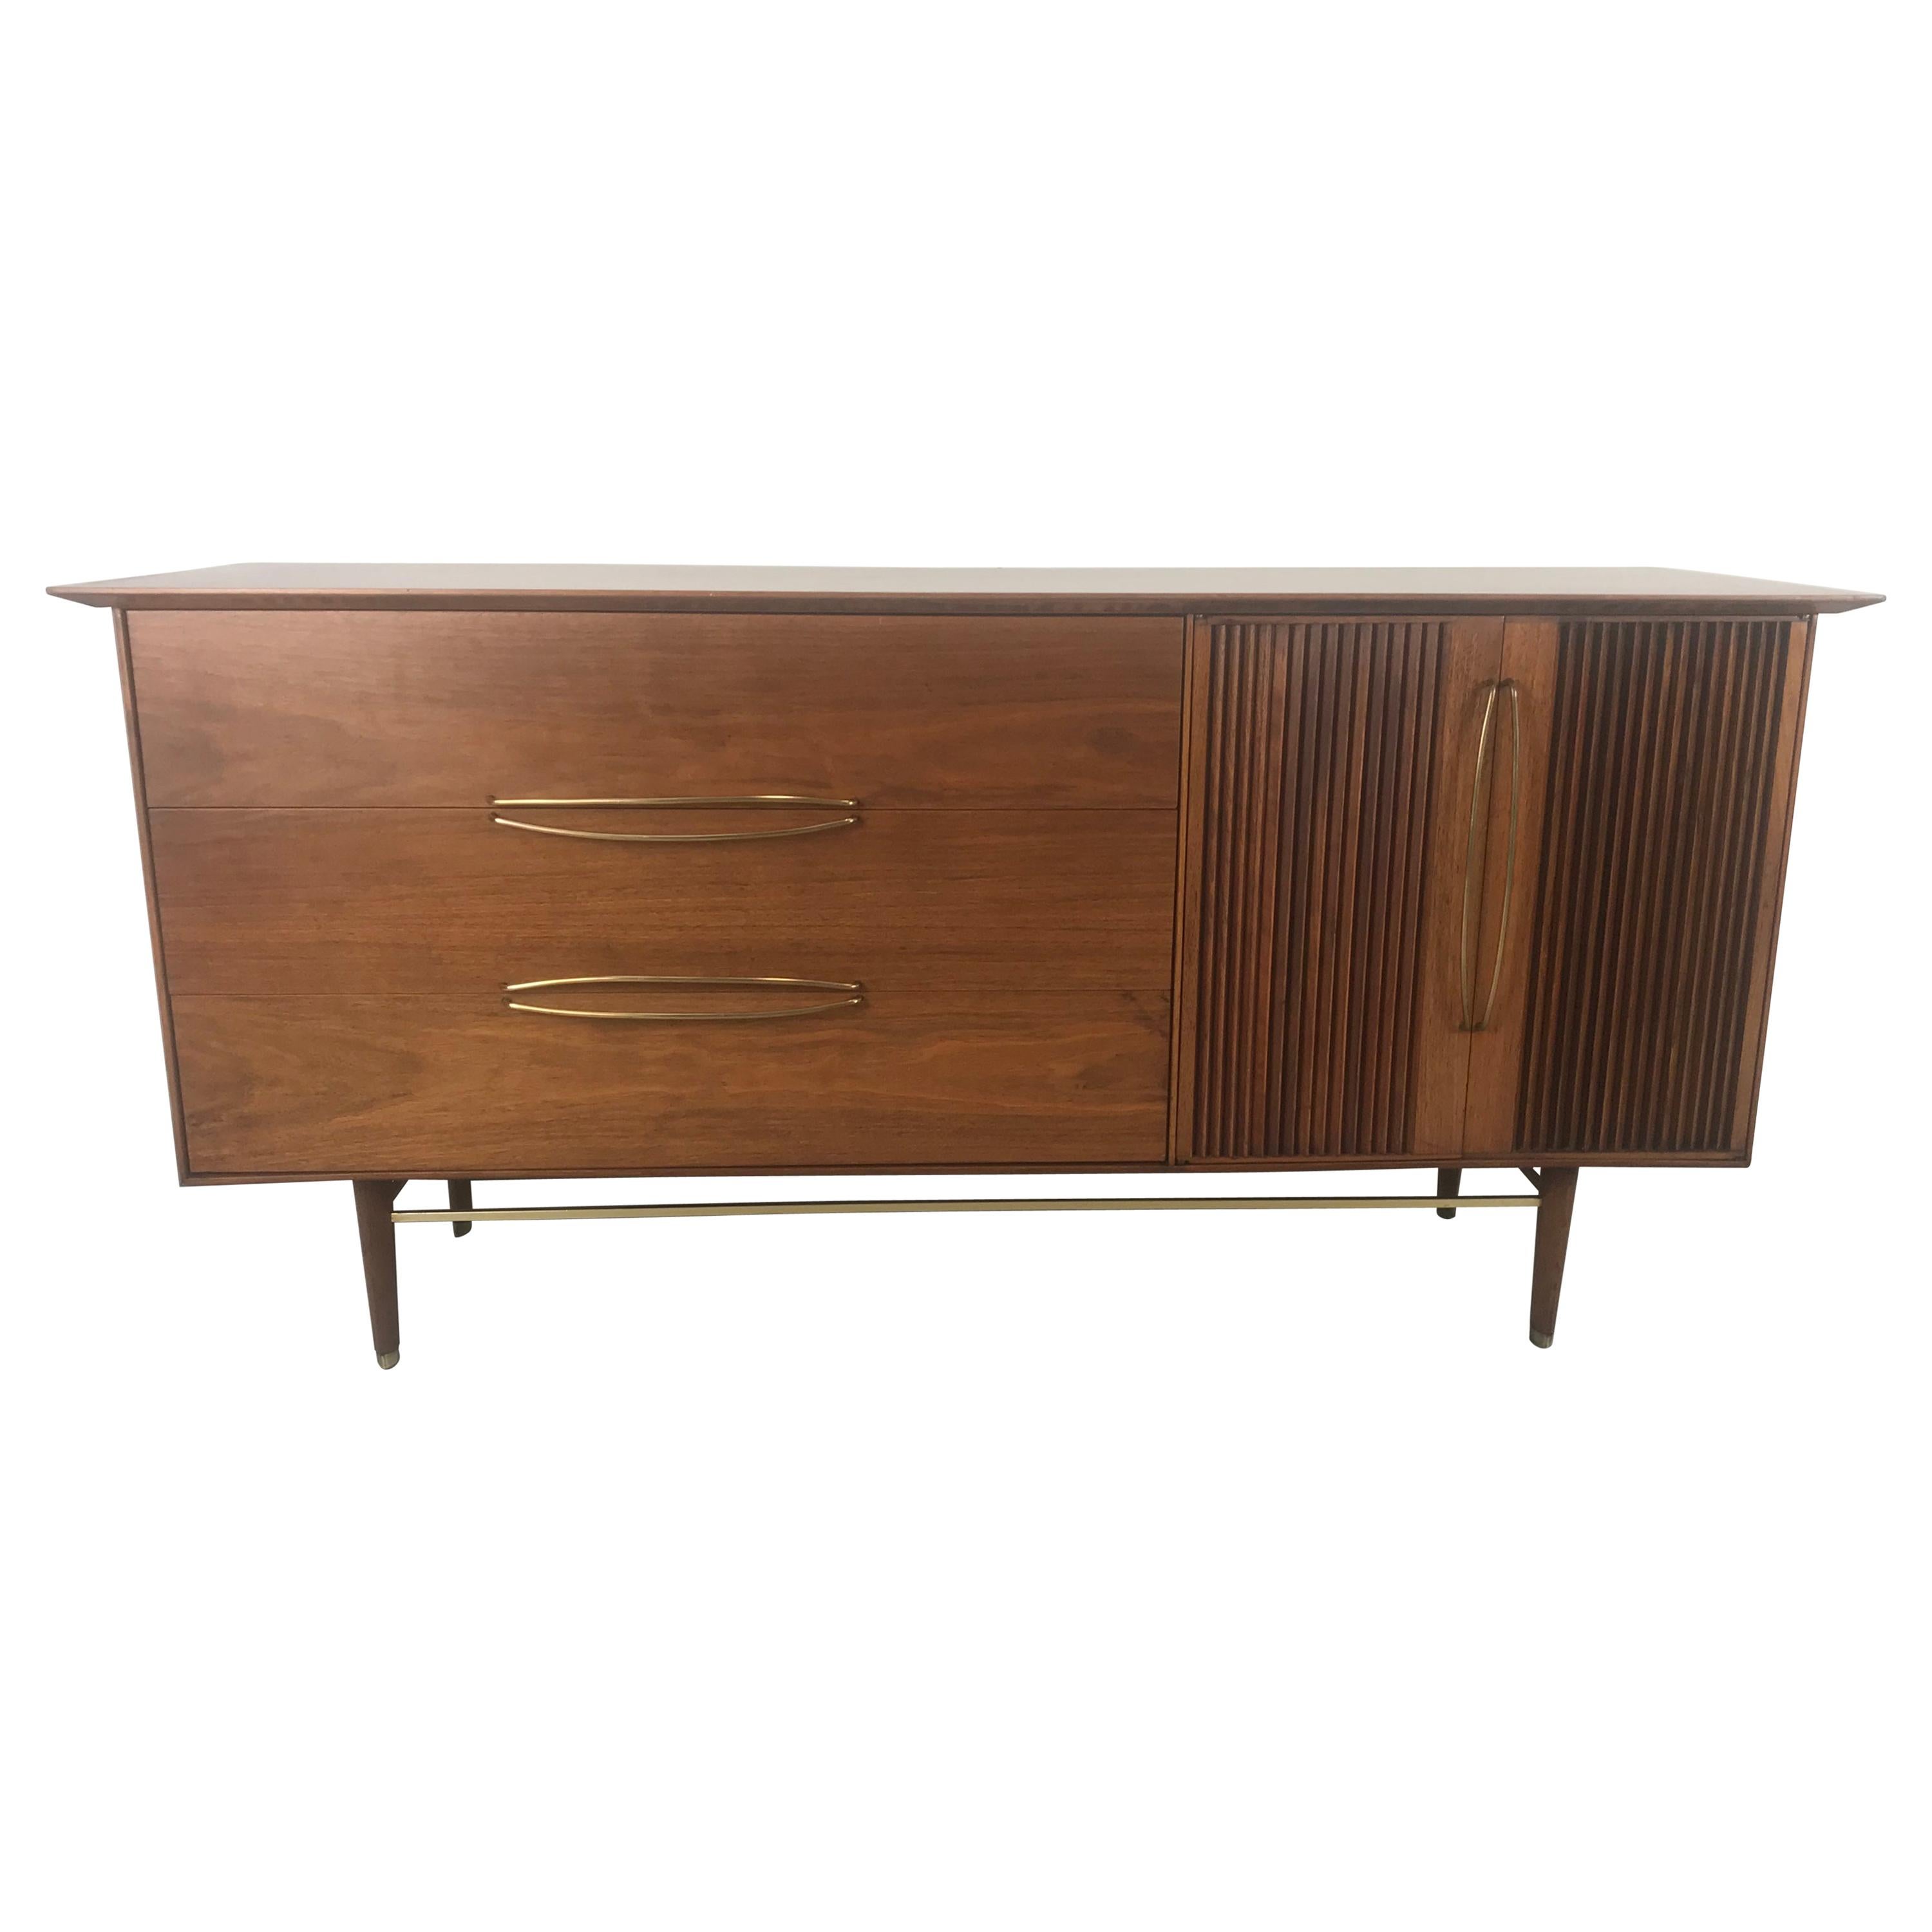 Stunning Modernist Walnut and Brass Dresser by Helen Hobey Baker